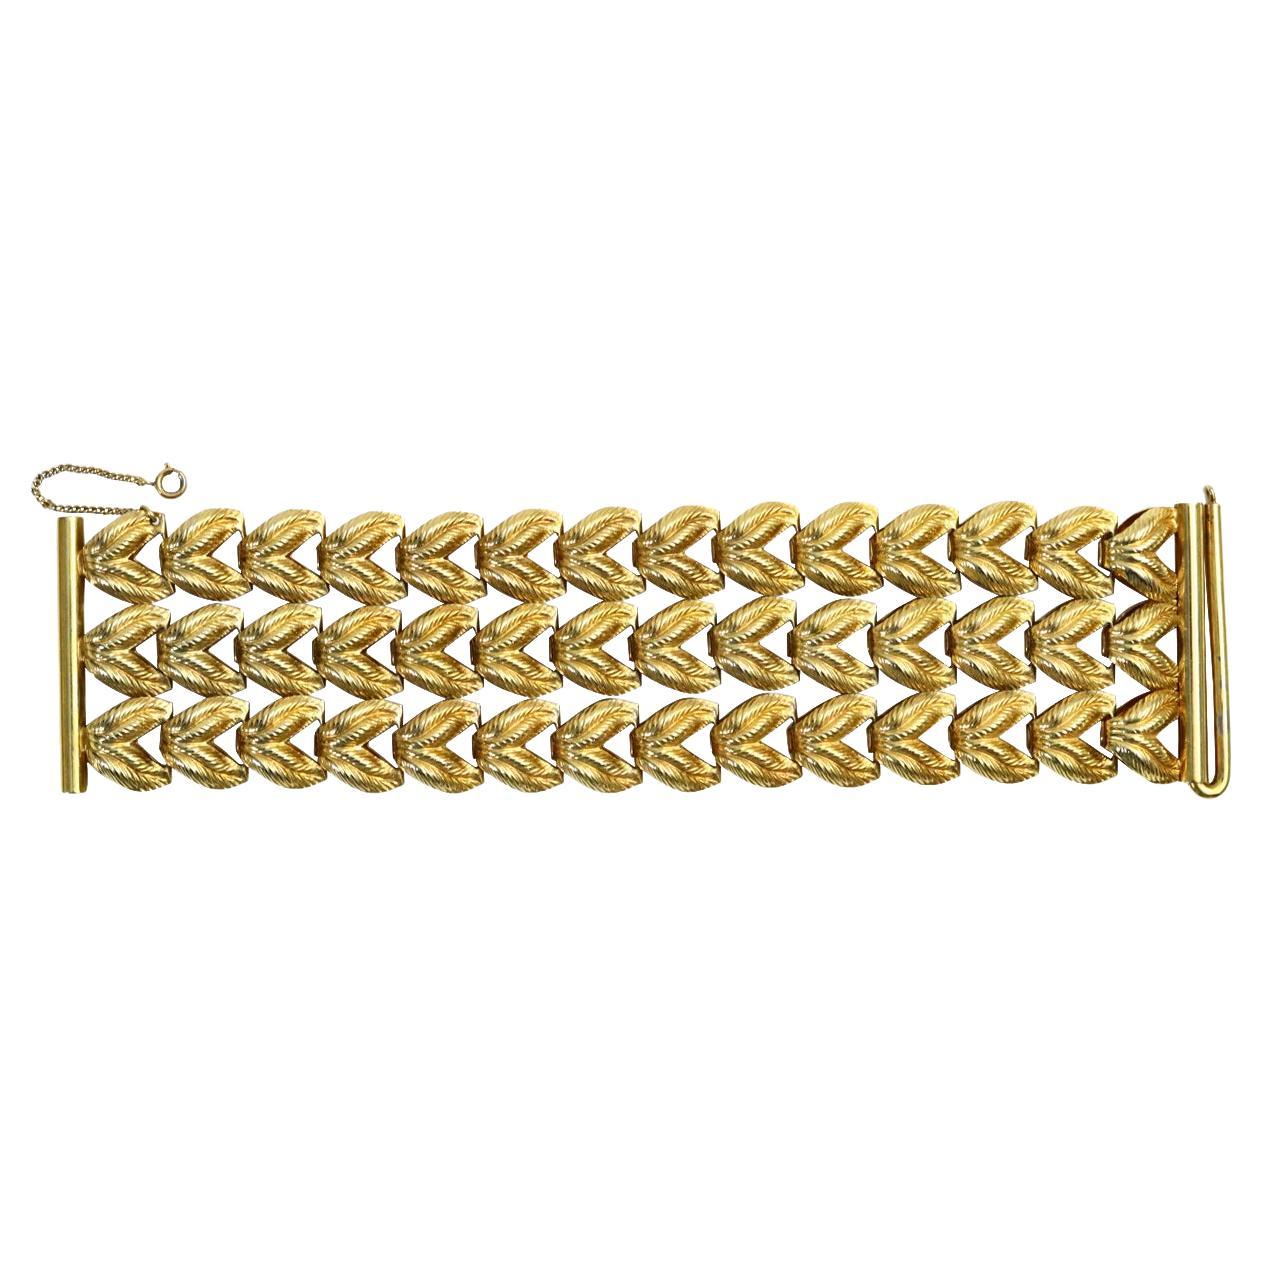 Vintage Napier Gold Tone 3 Row Bracelet Circa 1960s.  L'un des plus anciens bracelets Napier.  Il y a trois rangées de ce qui ressemble à du métal tressé qui s'attache à une barre à chaque extrémité.  Chaque ligne de tresse est indépendante l'une de